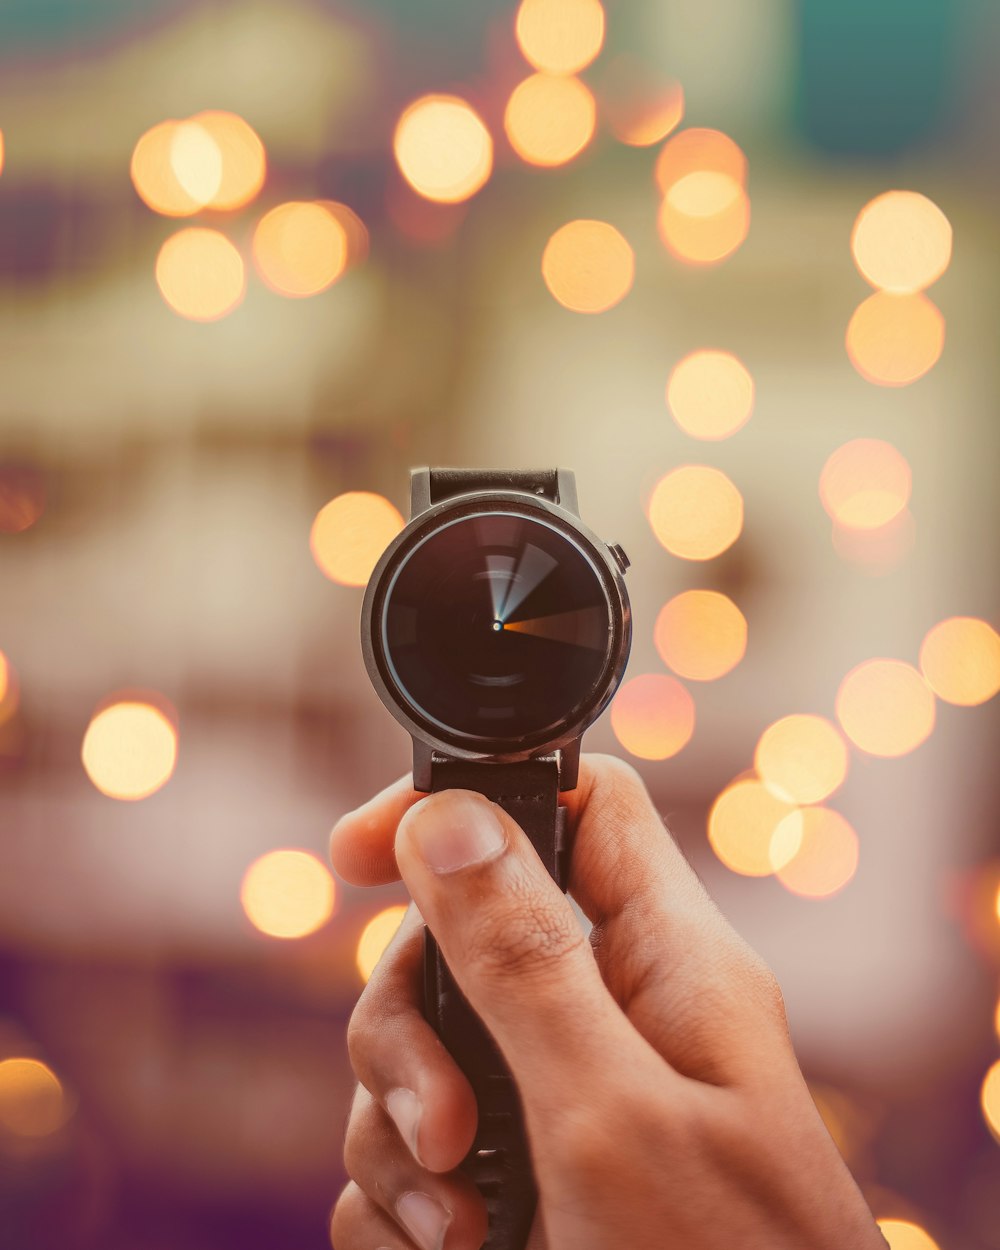 Photographie de bokeh de smartwatch ronde de couleur argentée